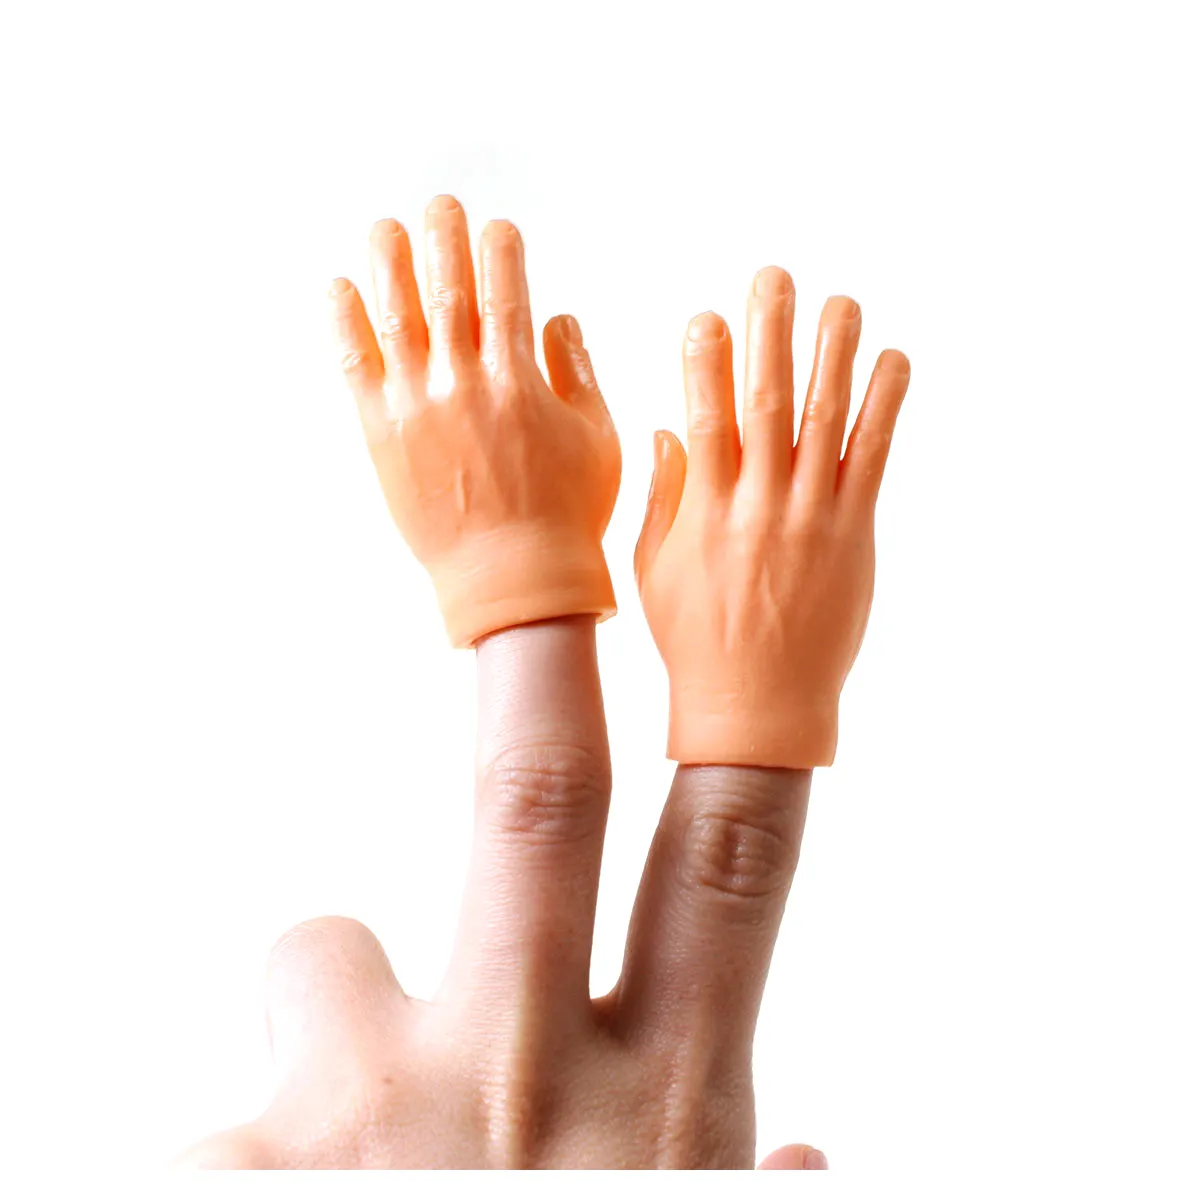 10 adet Set sol veya sağ küçük eller oyuncak parmak eller parmak kuklaları